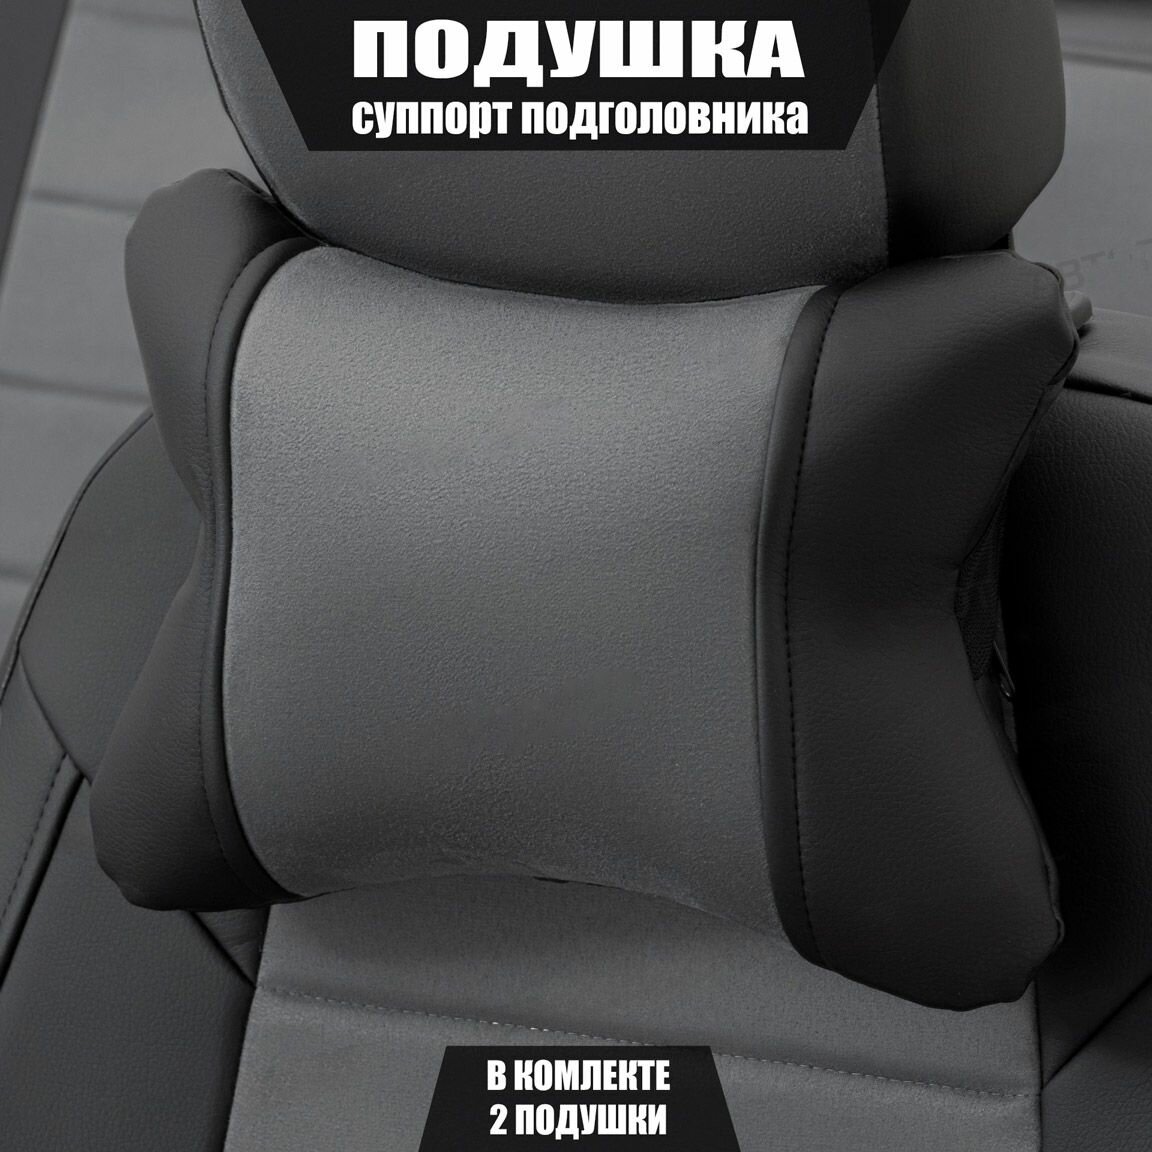 Подушки под шею (суппорт подголовника) для Сузуки Гранд Витара (2012 - 2016) внедорожник 5 дверей / Suzuki Grand Vitara, Алькантара, 2 подушки, Черный и серый